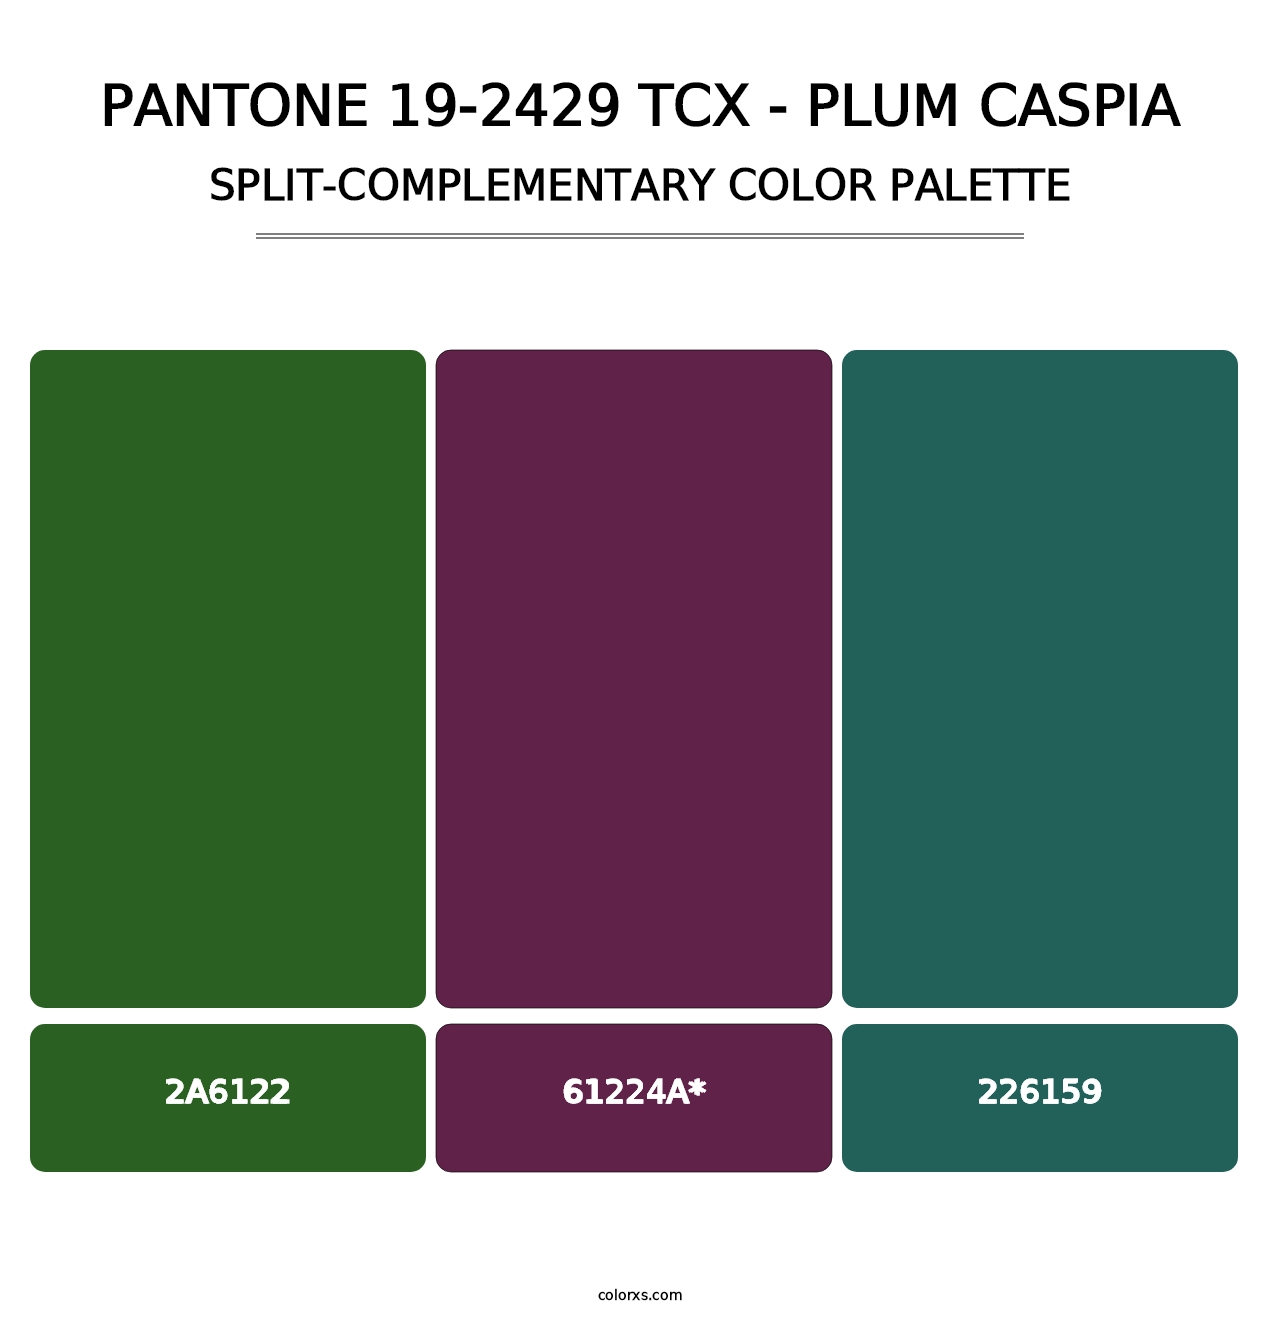 PANTONE 19-2429 TCX - Plum Caspia - Split-Complementary Color Palette